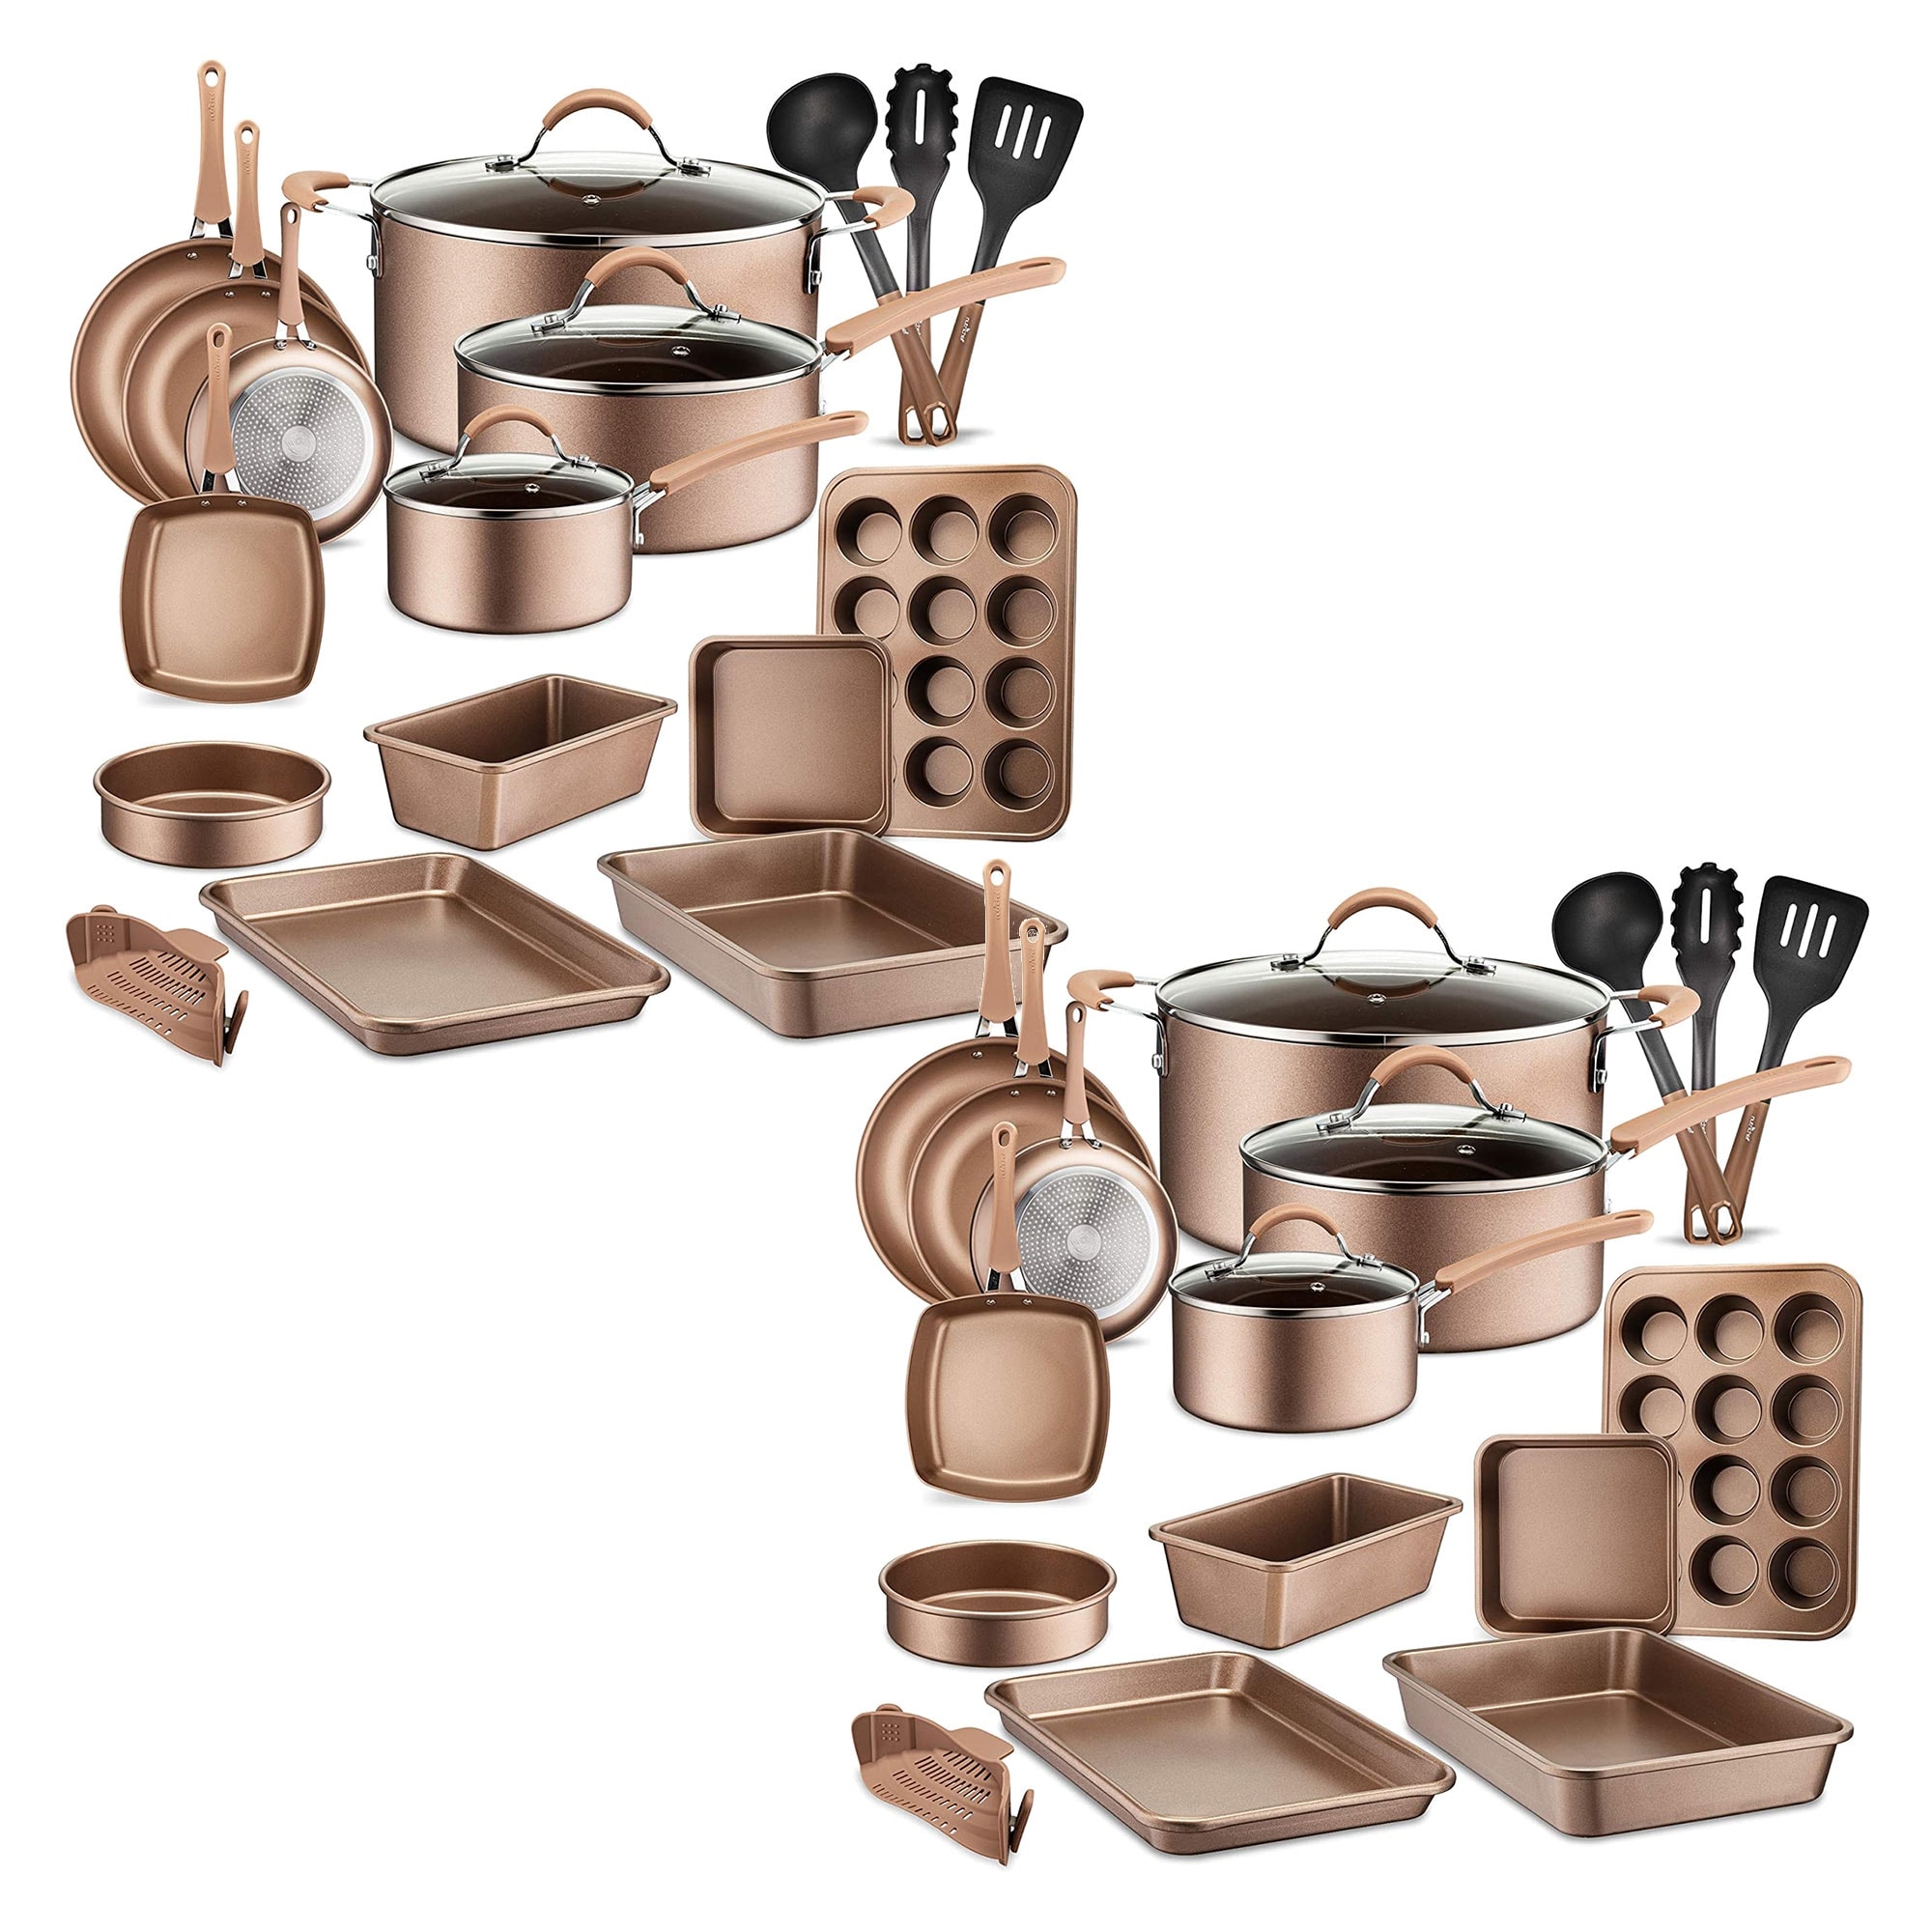 NutriChef 17 Piece Non-Stick Cookware Set, Pots & Pans with